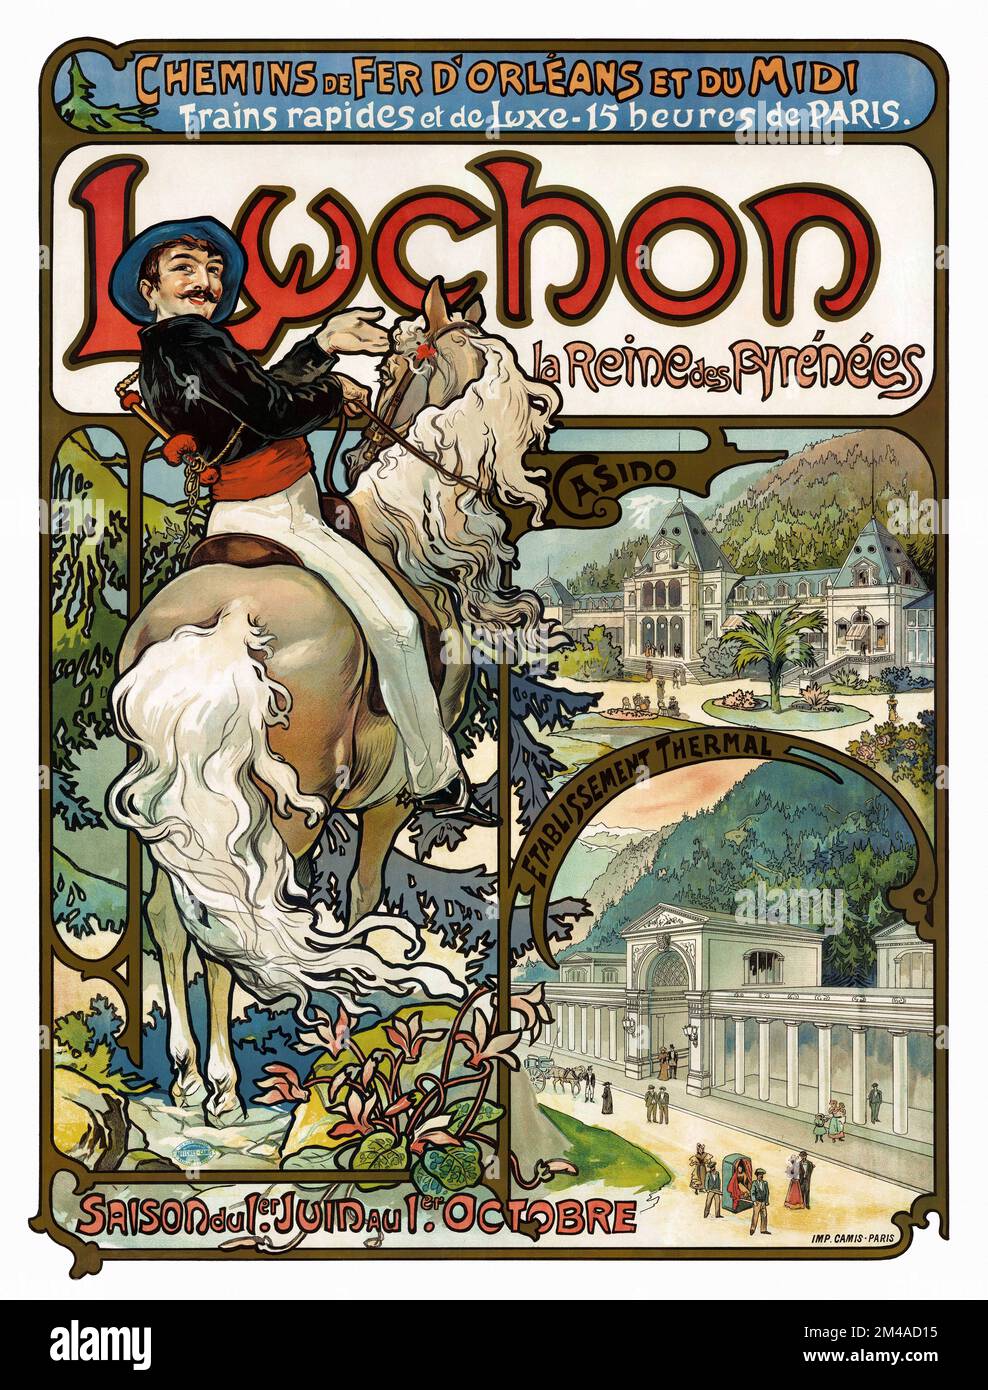 Luchon la reine des Pyrénées di Alphonse Mucha (1860-1939). Poster pubblicato nel 1895 in Francia. Foto Stock